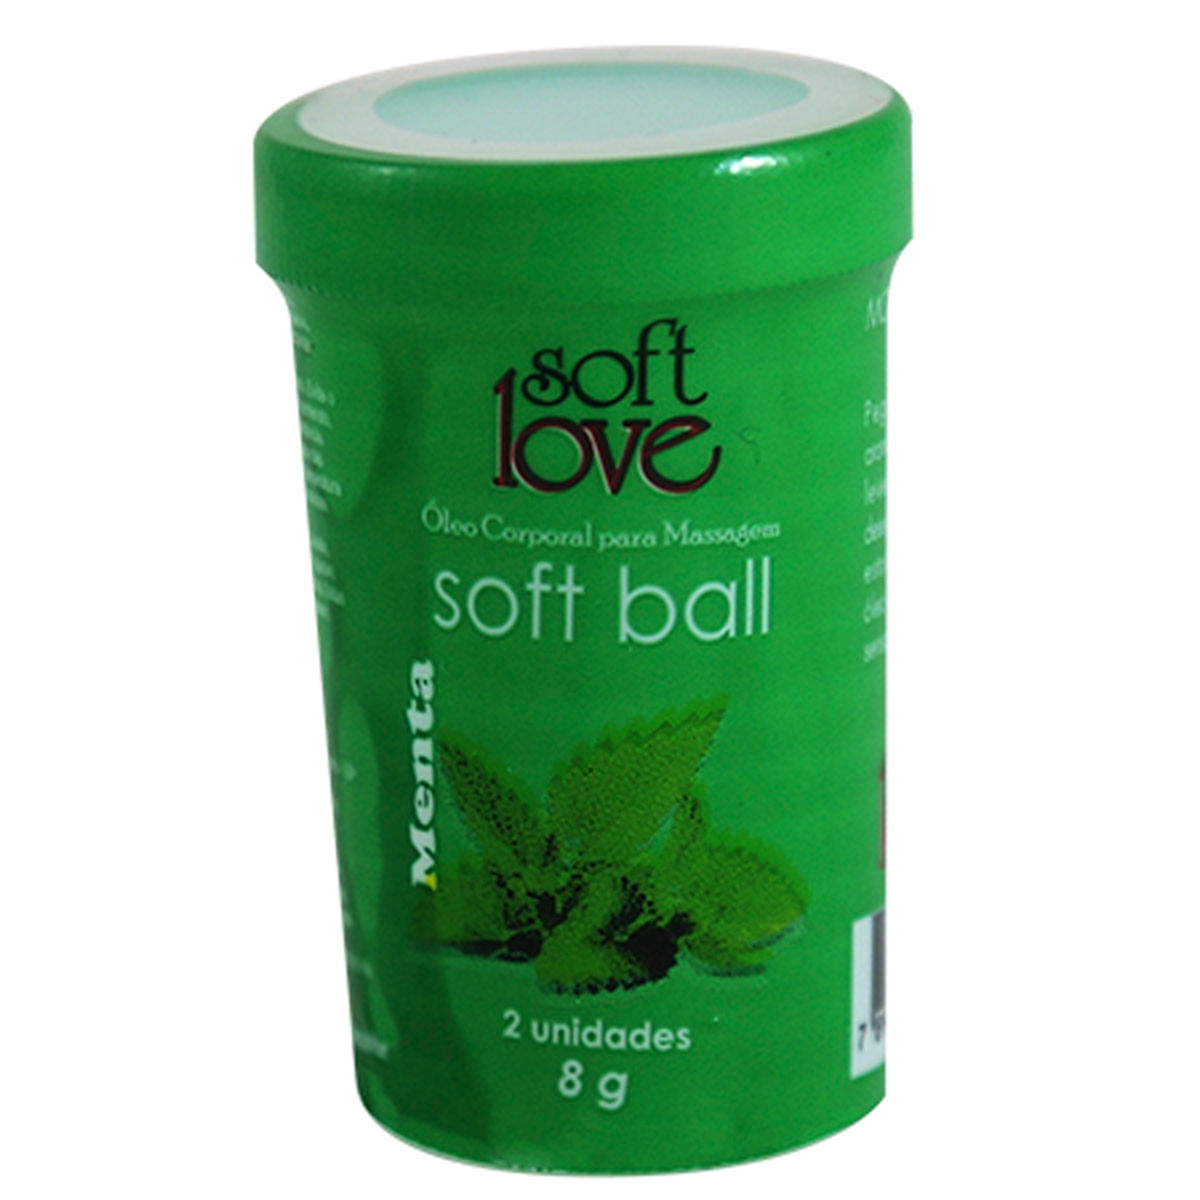 Soft Ball Menta Óleo Corporal para Massagem Beijável 2 uni Soft Love